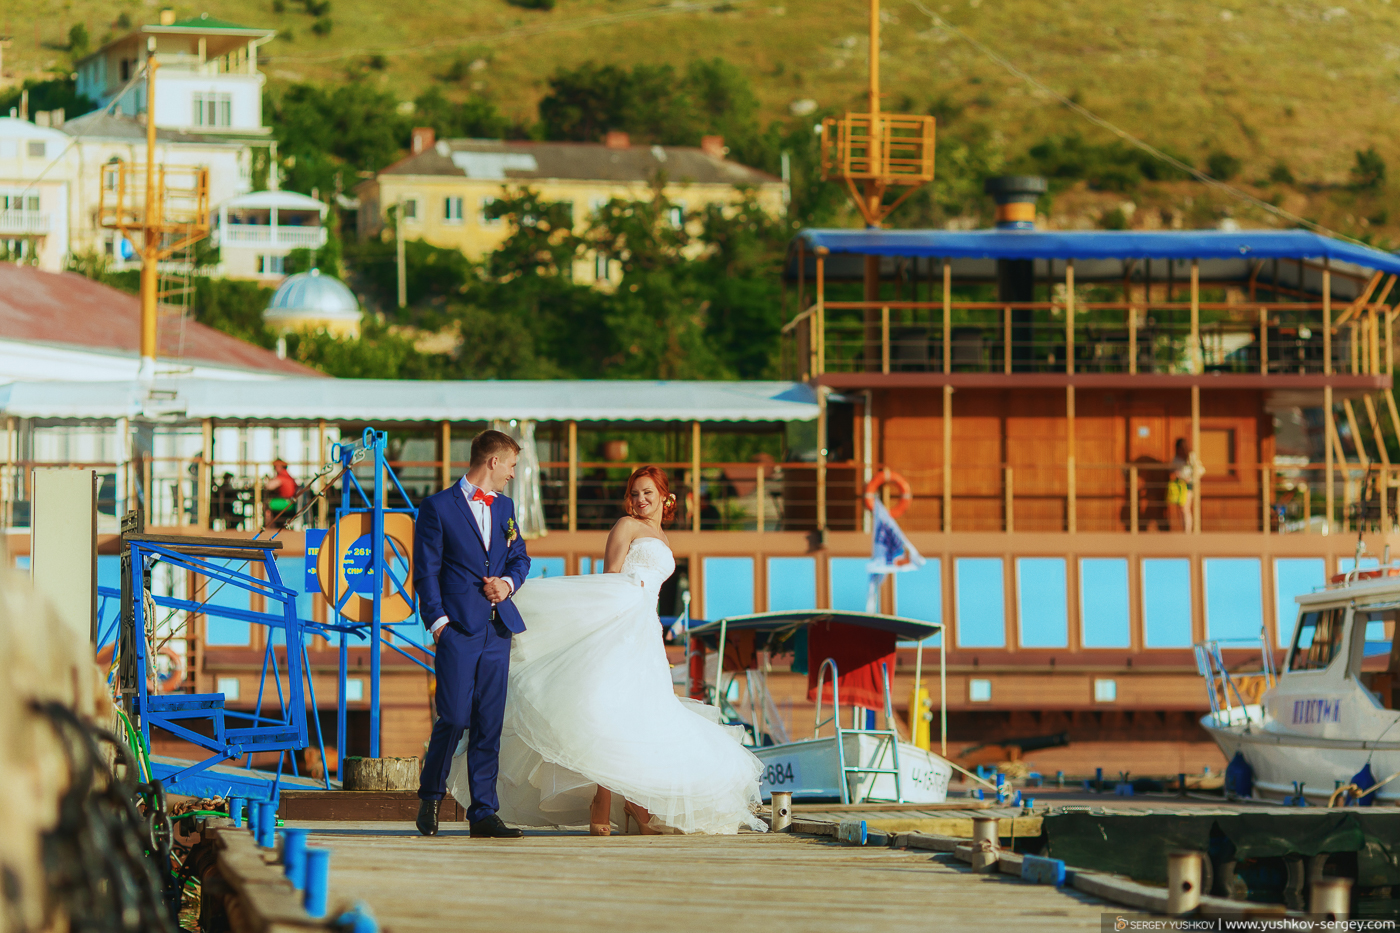 Свадебная фотосессия «Для двоих» в Крыму. Юлия и Юлиан.